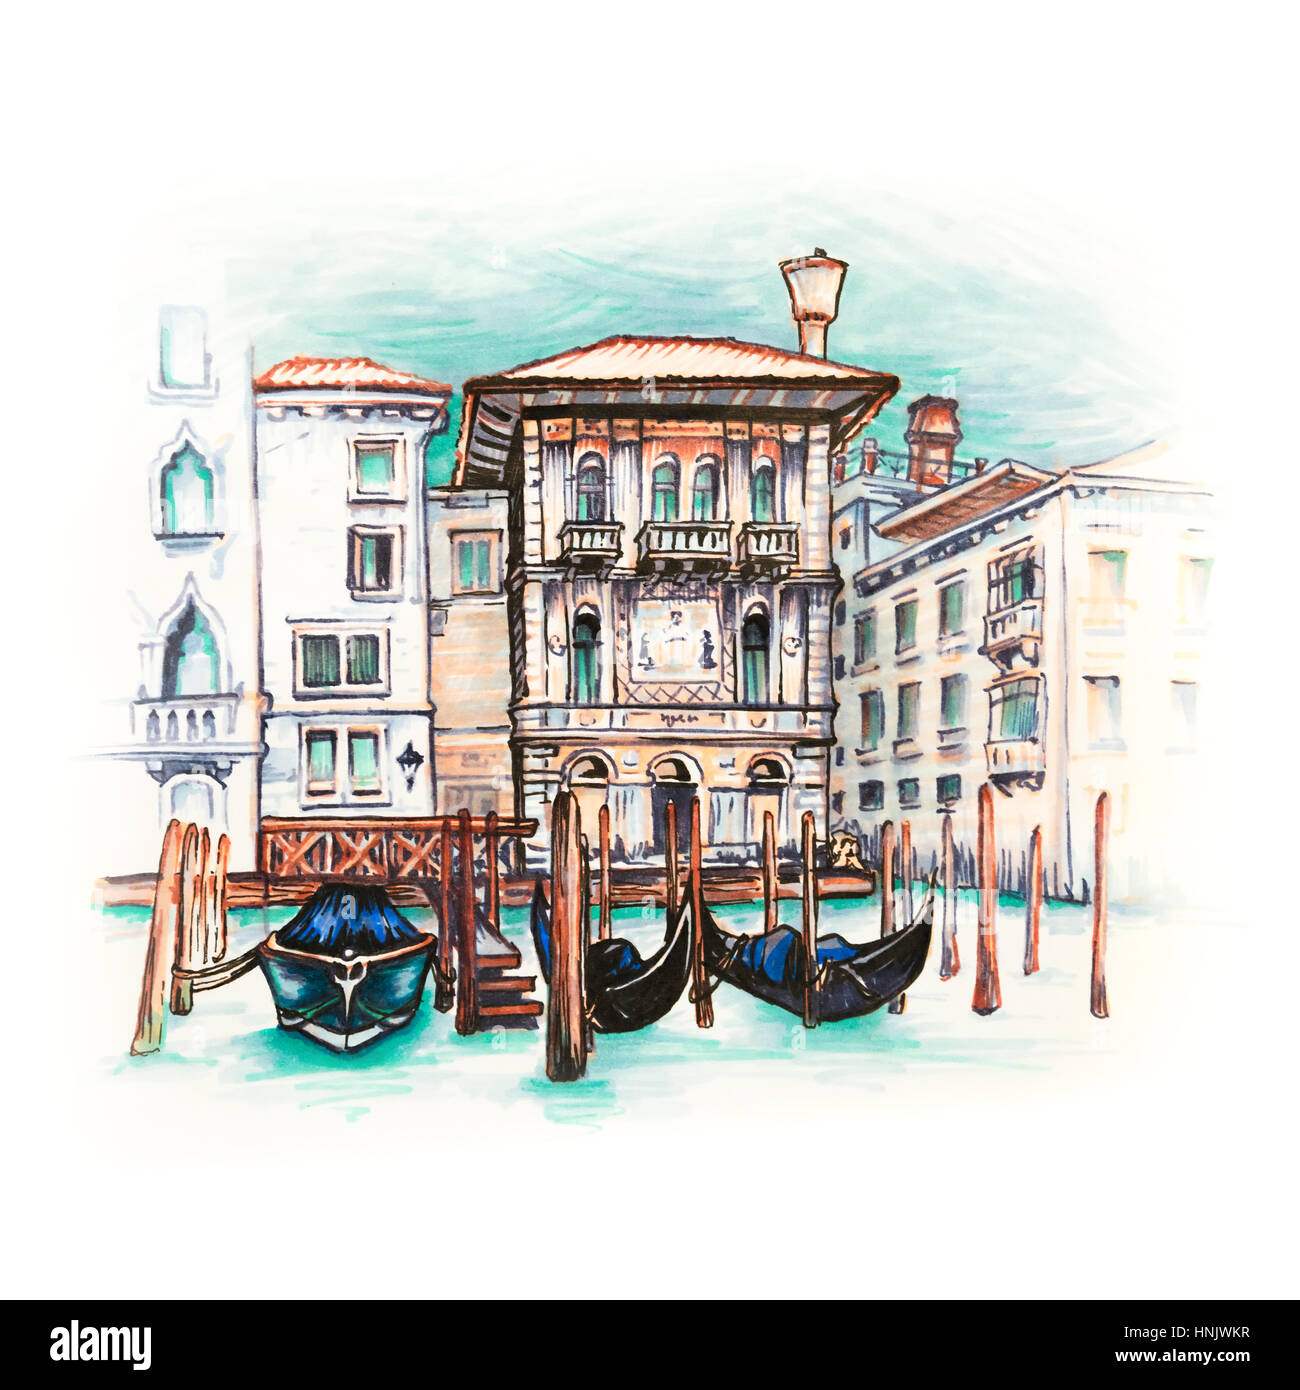 Palazzo im Stil der venezianischen Gotik am Canal Grande in Venedig Sommertag. Stockfoto